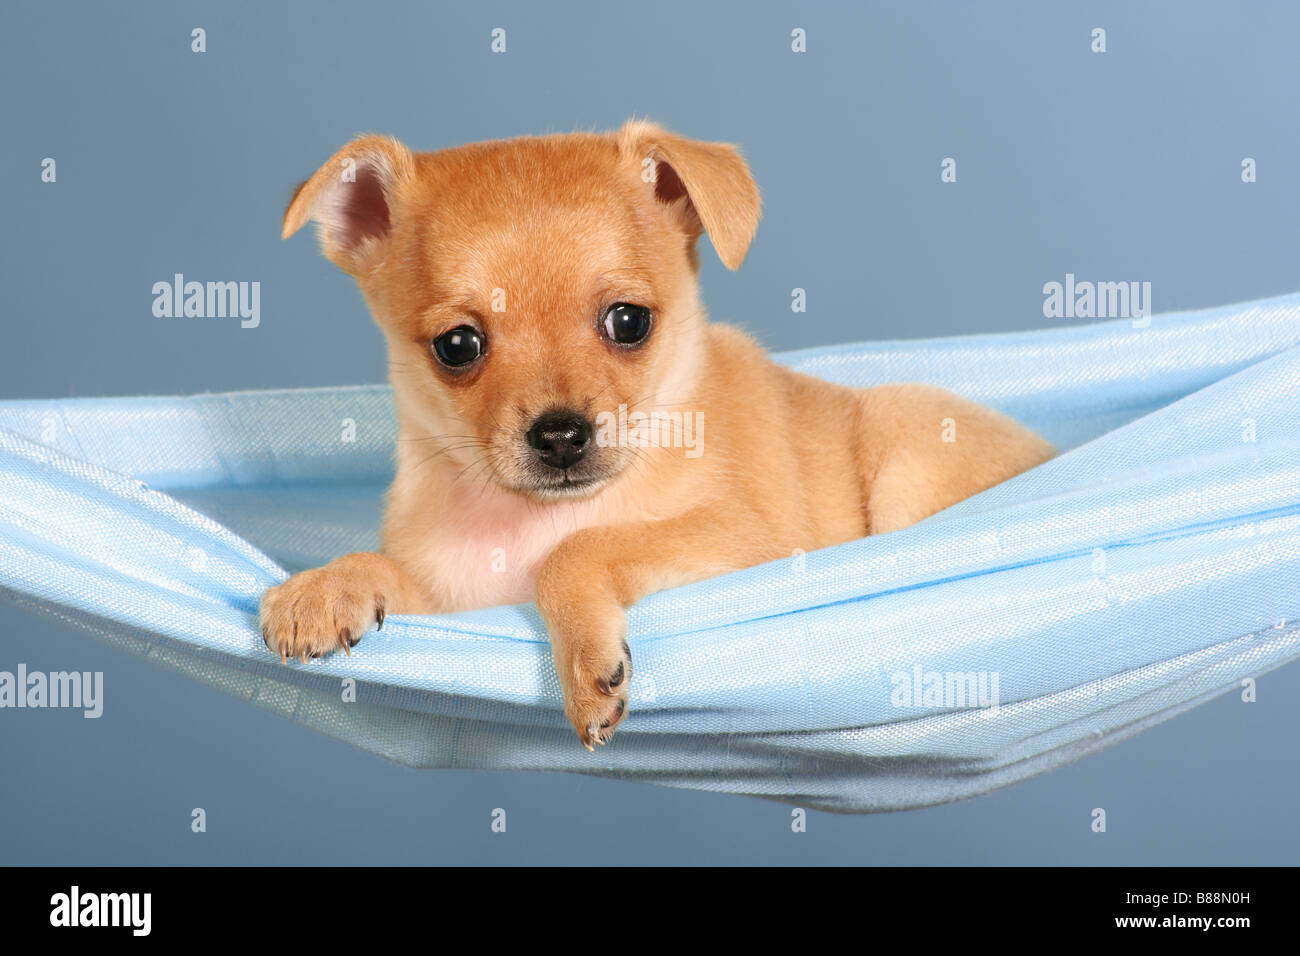 Jouet chien terrier russe - chiot couché dans un hamac Banque D'Images